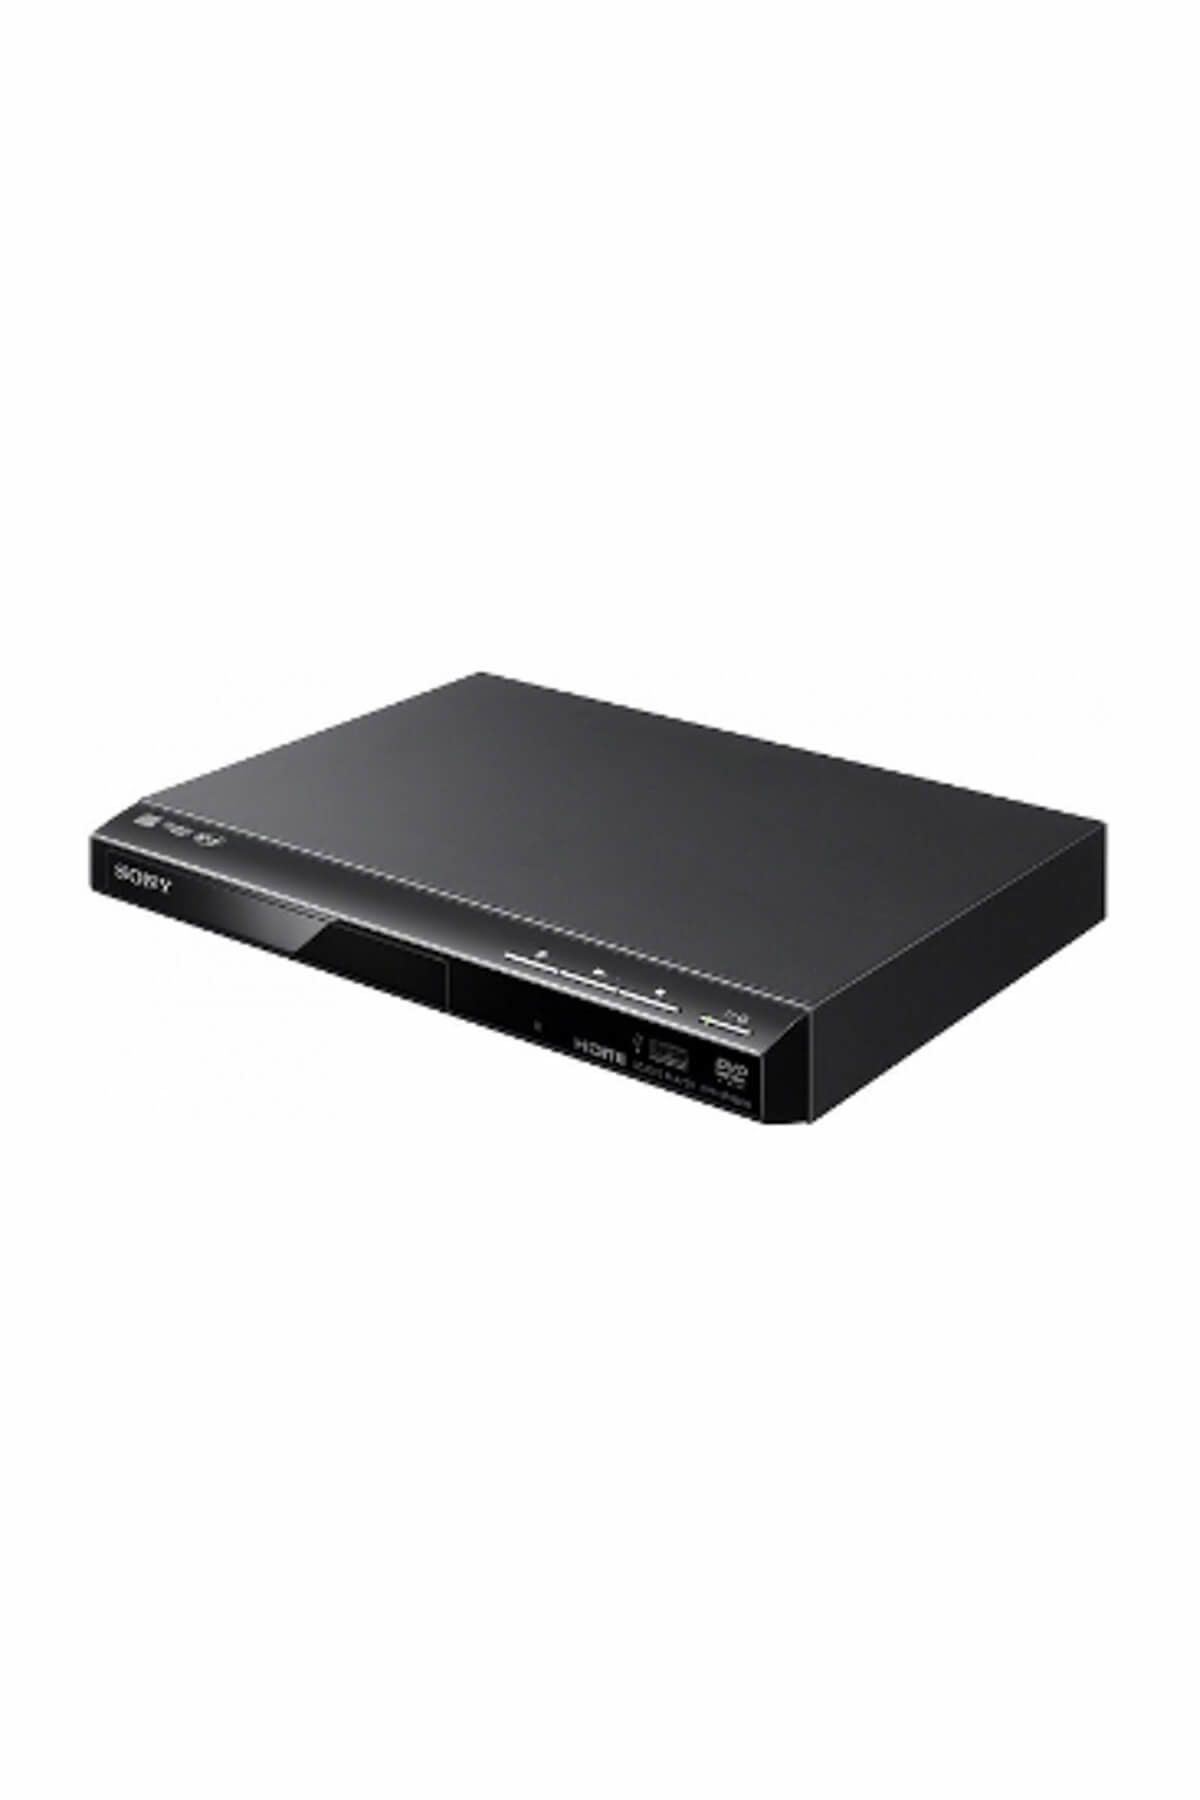 Sony DVP-SR760 DVD Oynatıcı